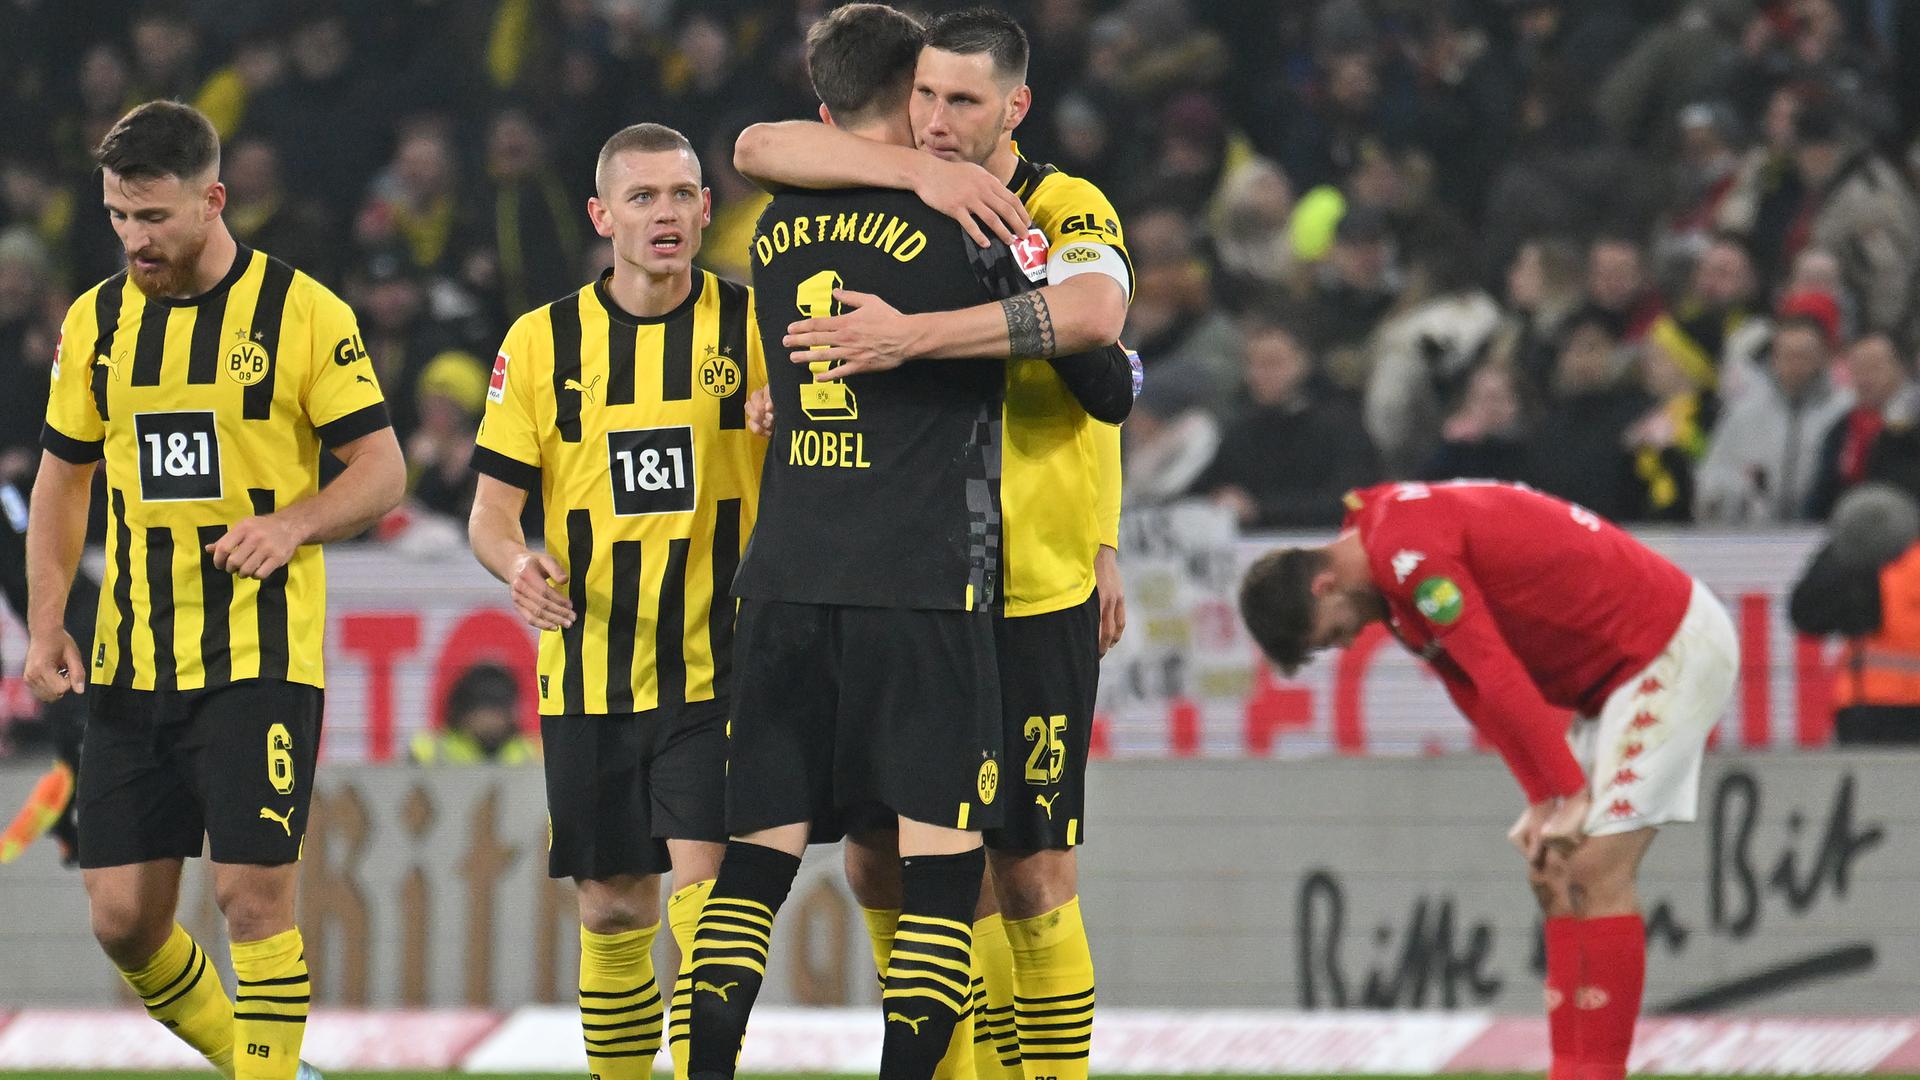 Spieler von Borussia Dortmund feiern nach dem Abpfiff ihren Sieg gegen Mainz und umarmen sich. Im Hintergrund ist ein Mainzer Spieler zu sehen, der sich mit frustriert herunterhängendem Kopf mit seinen Händen auf seine Knie aufstützt.